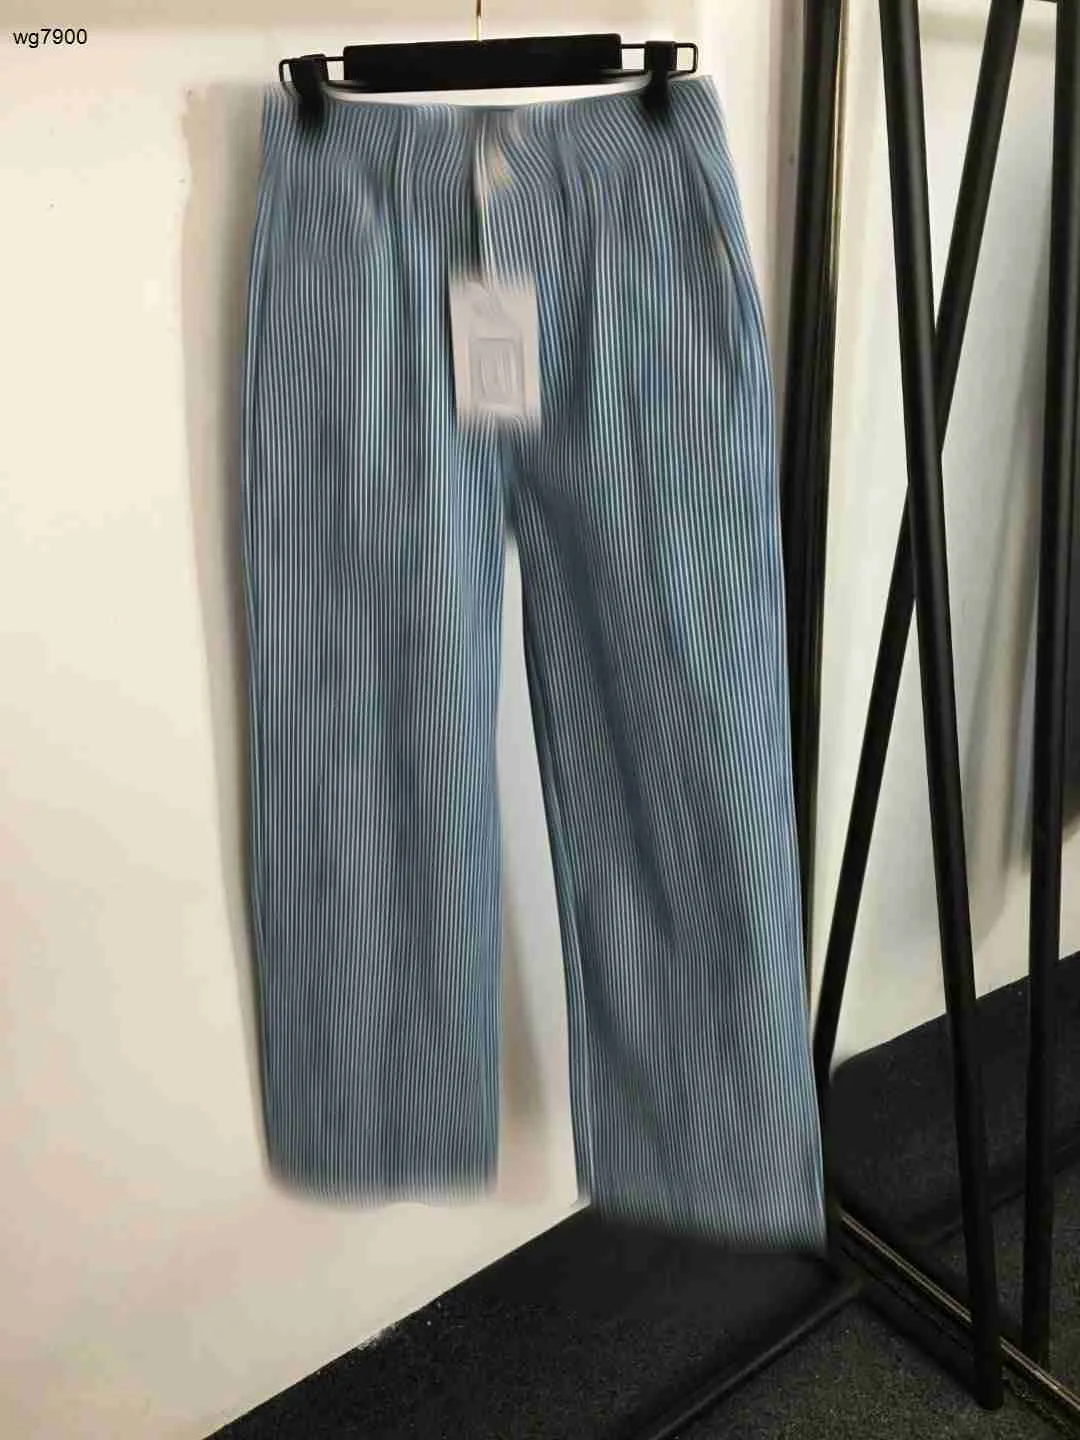 Projektantki dżinsowe dżinsy odzieżowe Panie Panties Jakość pokryty logo haft haftowe proste dżinsowe spodnie Dec 07 Nowe przybysze